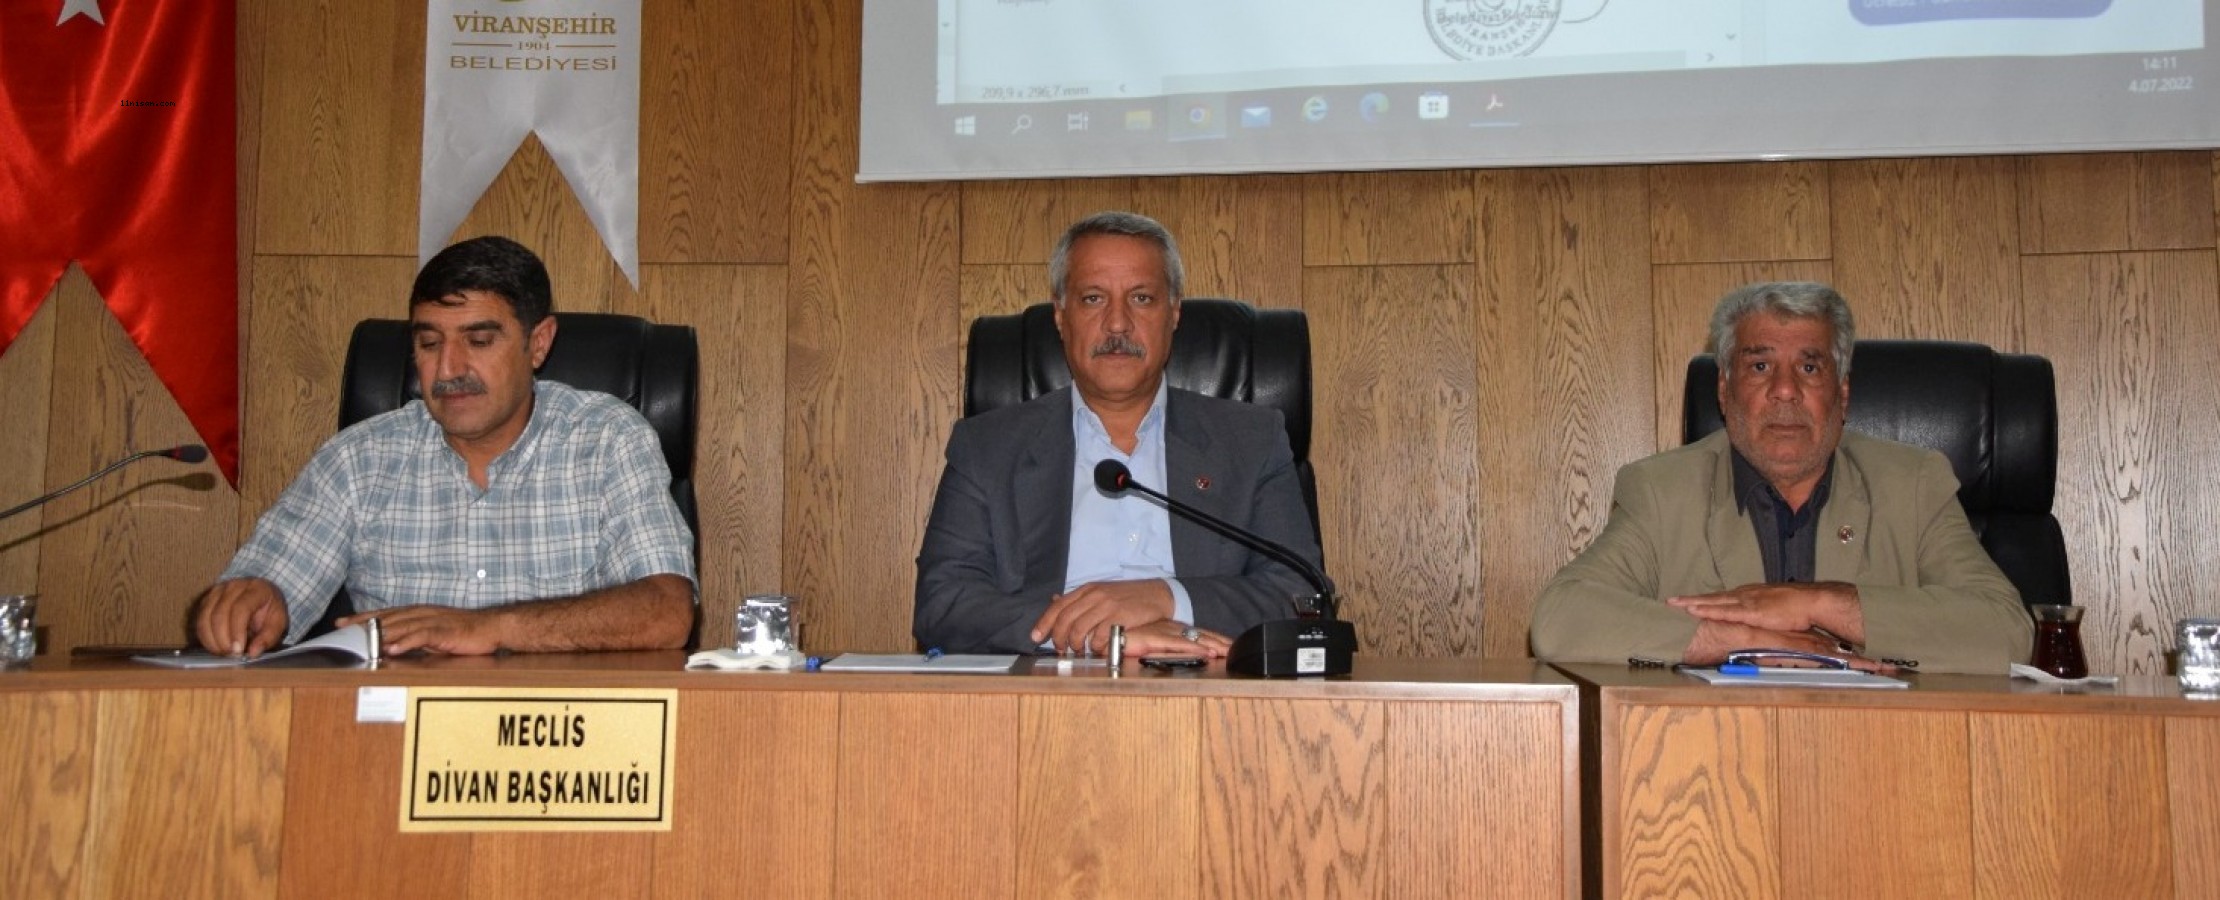 Viranşehir’de belediye meclis toplantısı yapıldı